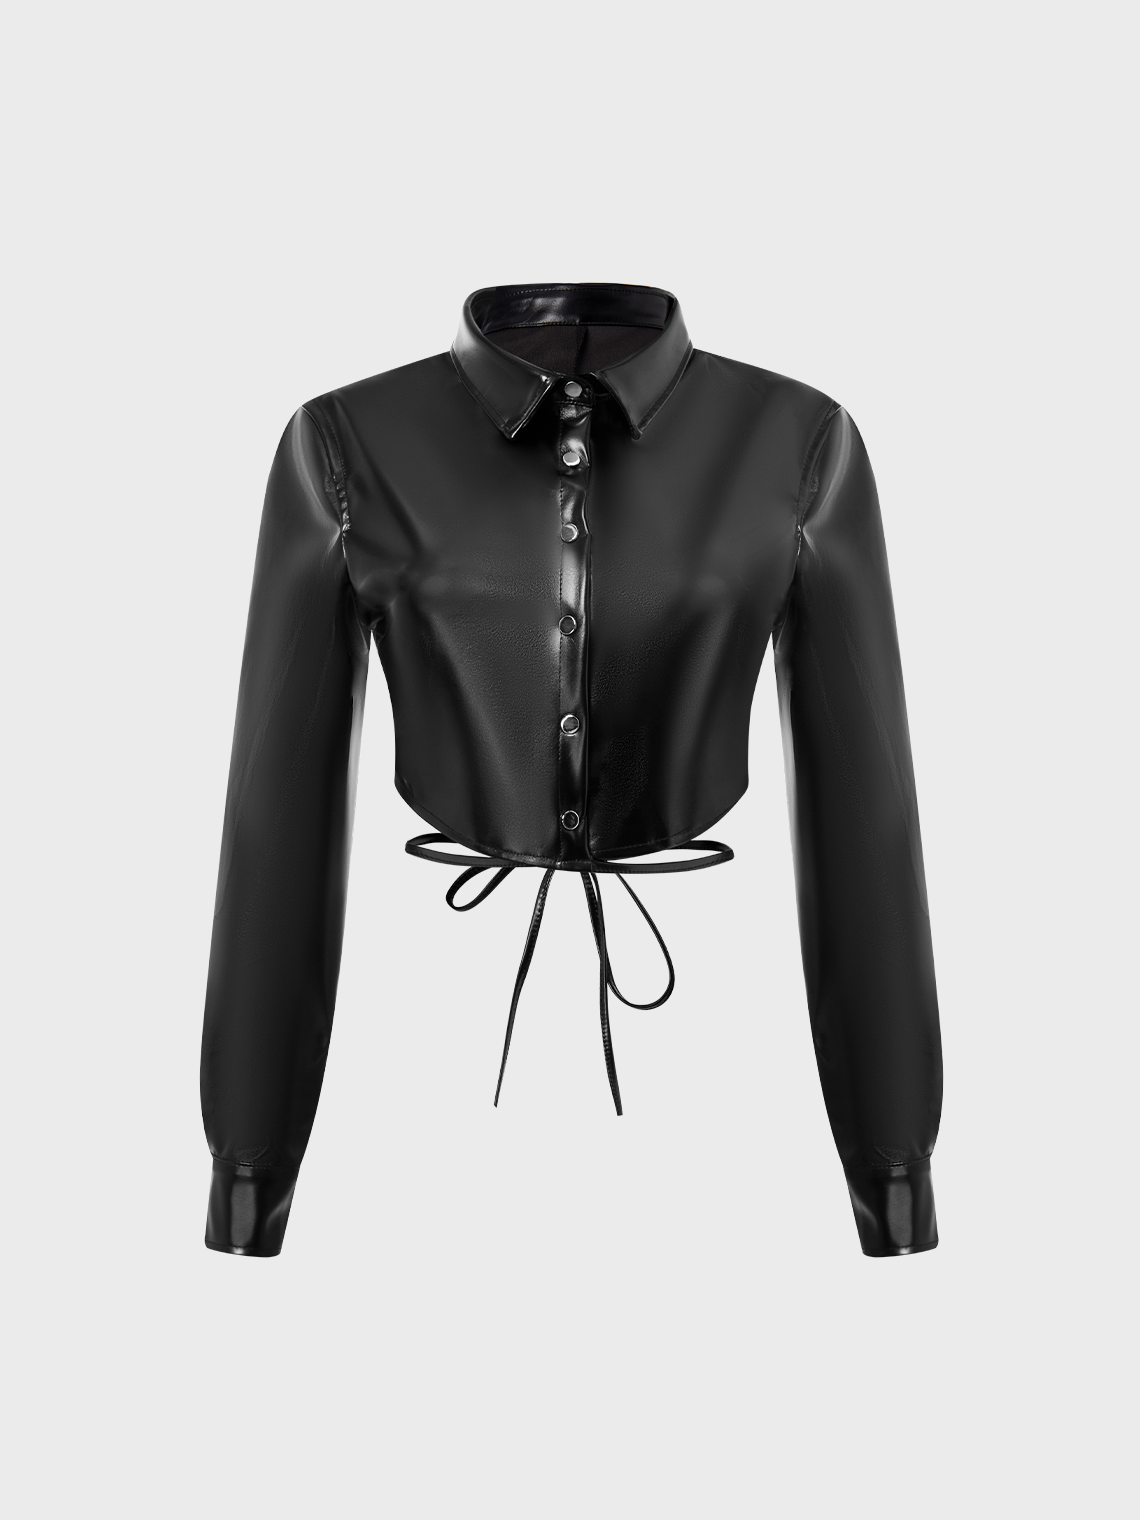 【Final Sale】Street Black Leather Low Waist Top Outwear